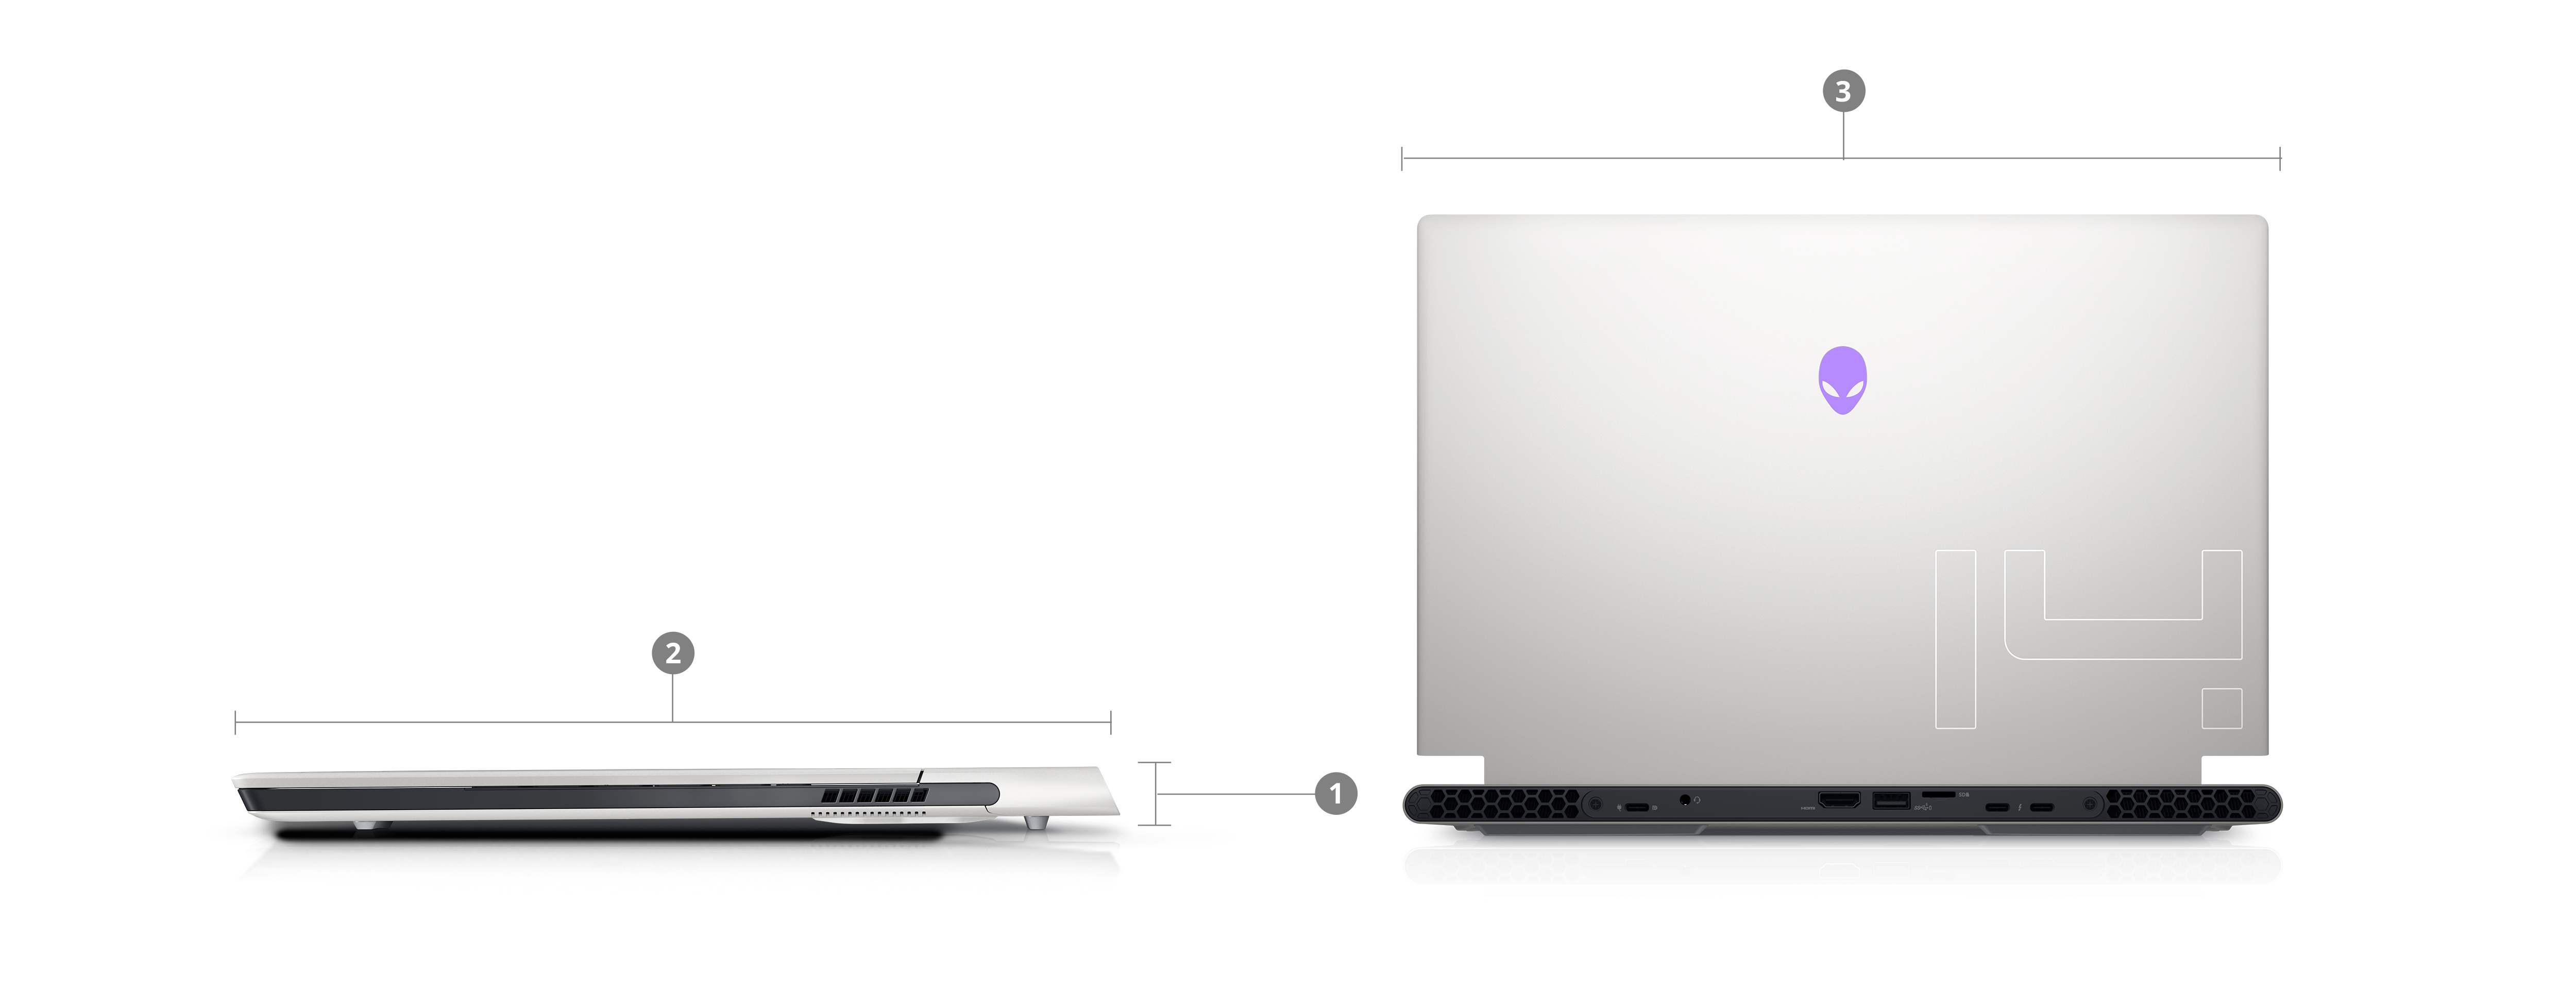 Image de deux ordinateurs portables de jeu Dell Alienware X14 avec des numéros de 1 à 3 qui indiquent les dimensions et le poids du produit.